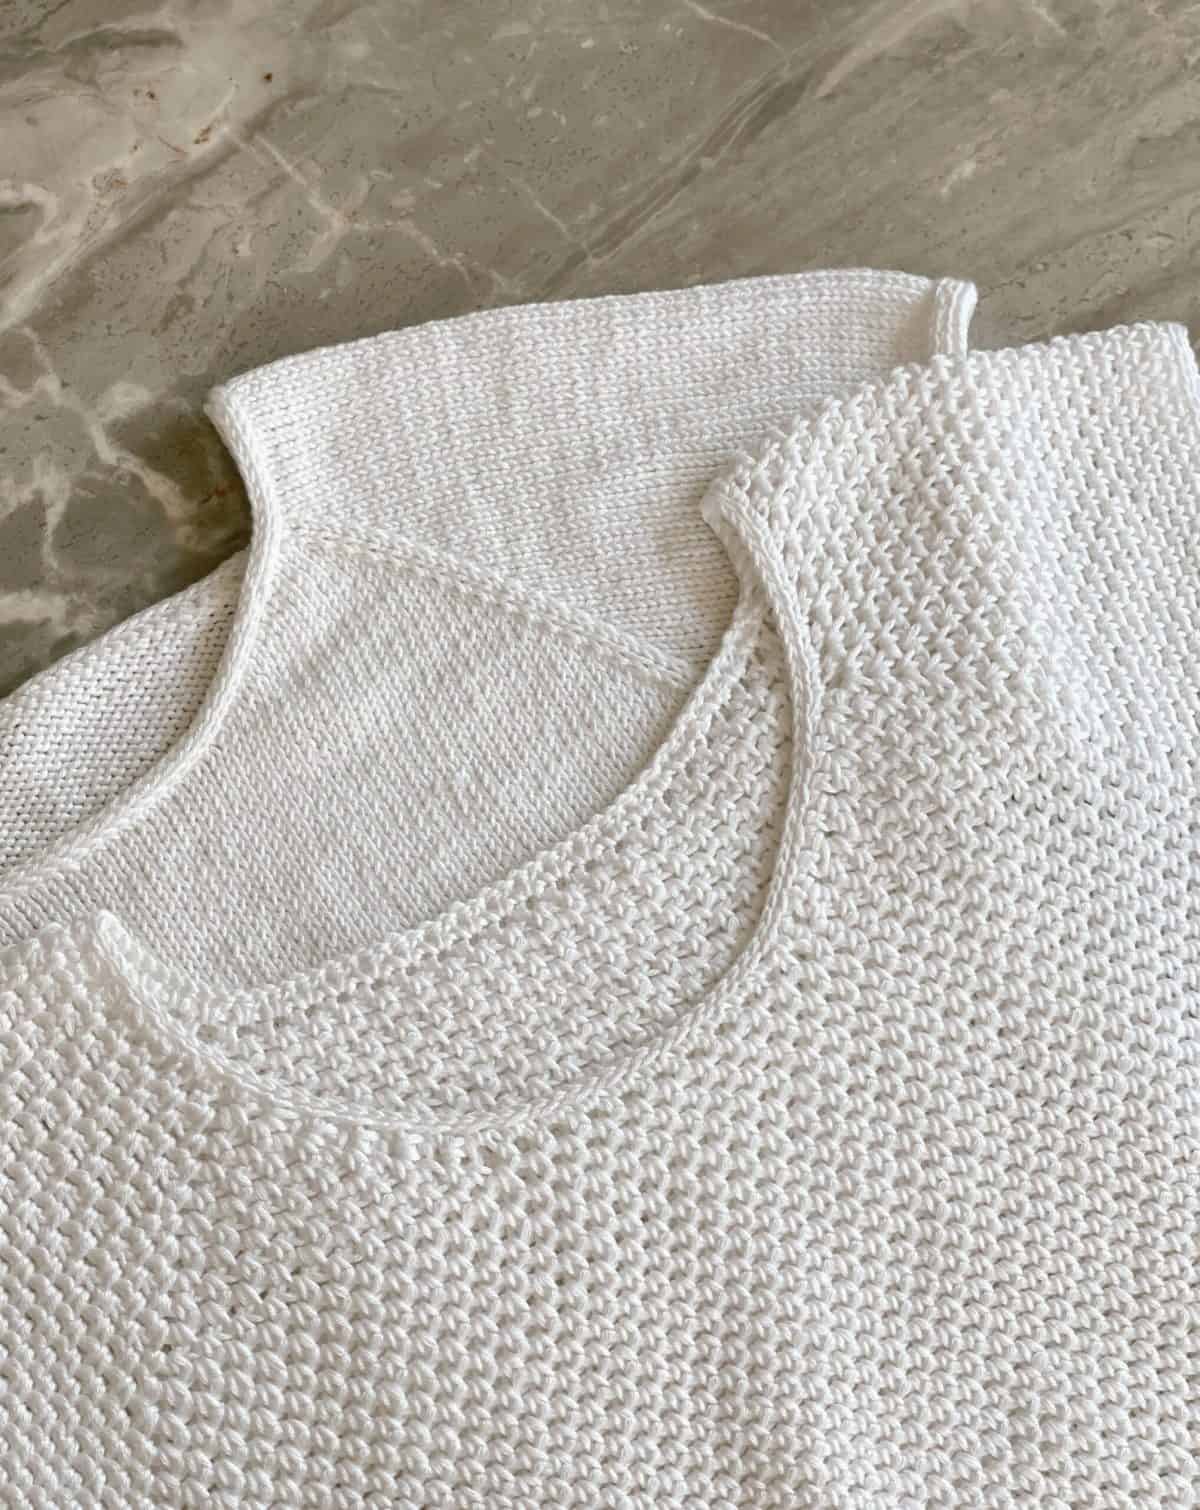 900+ Tshirt Yarn Crochet Patterns ideas